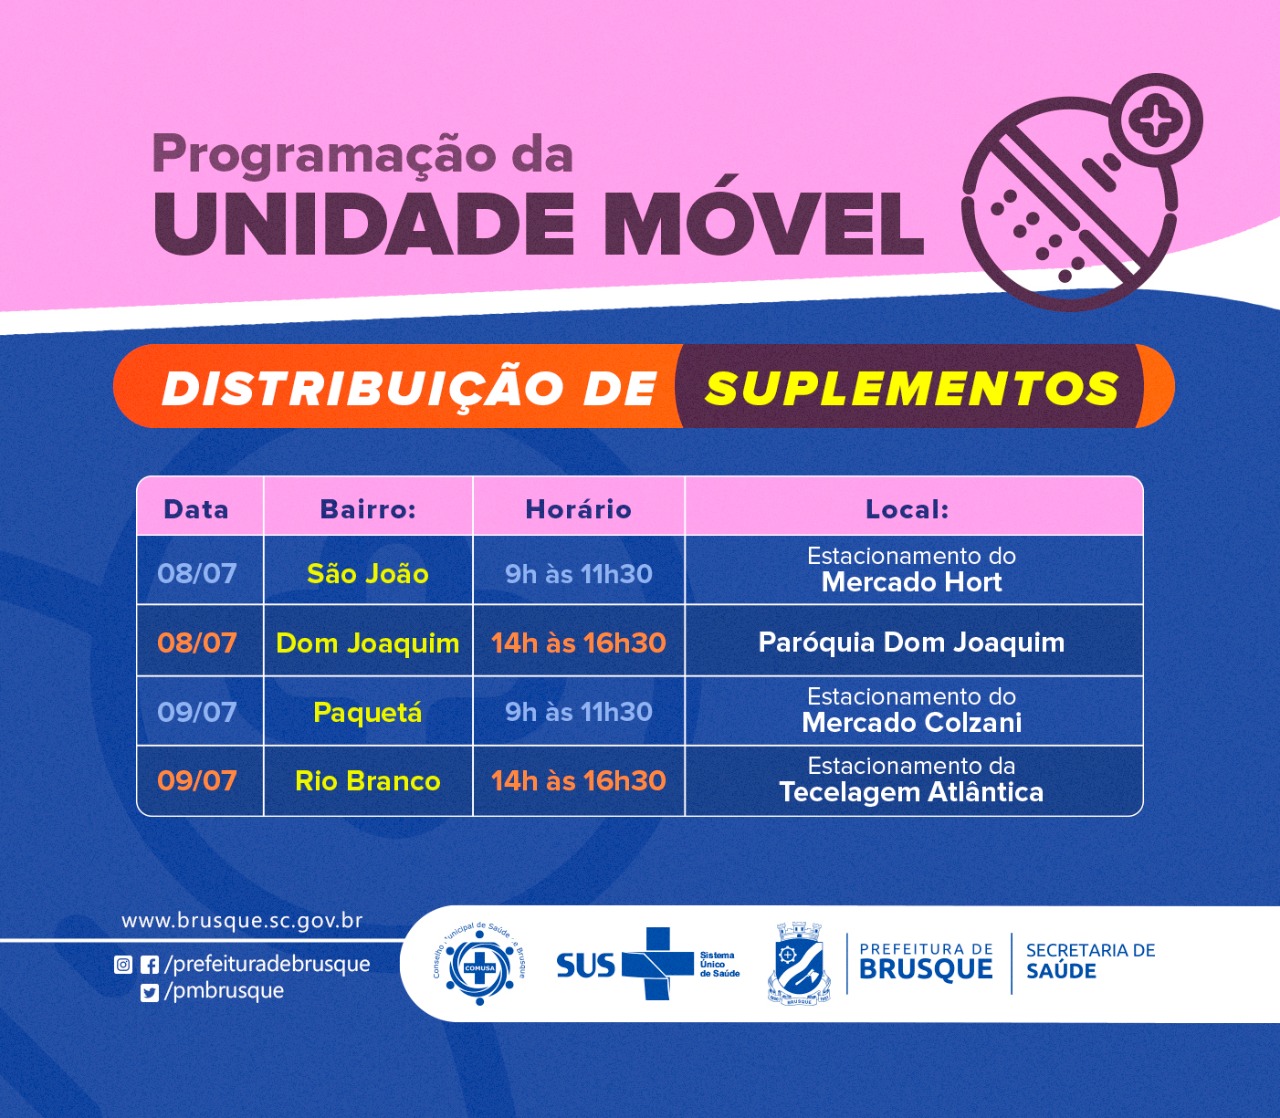 Covid-19: Unidade Móvel distribui suplementos no São João e no Dom Joaquim nesta quinta-feira